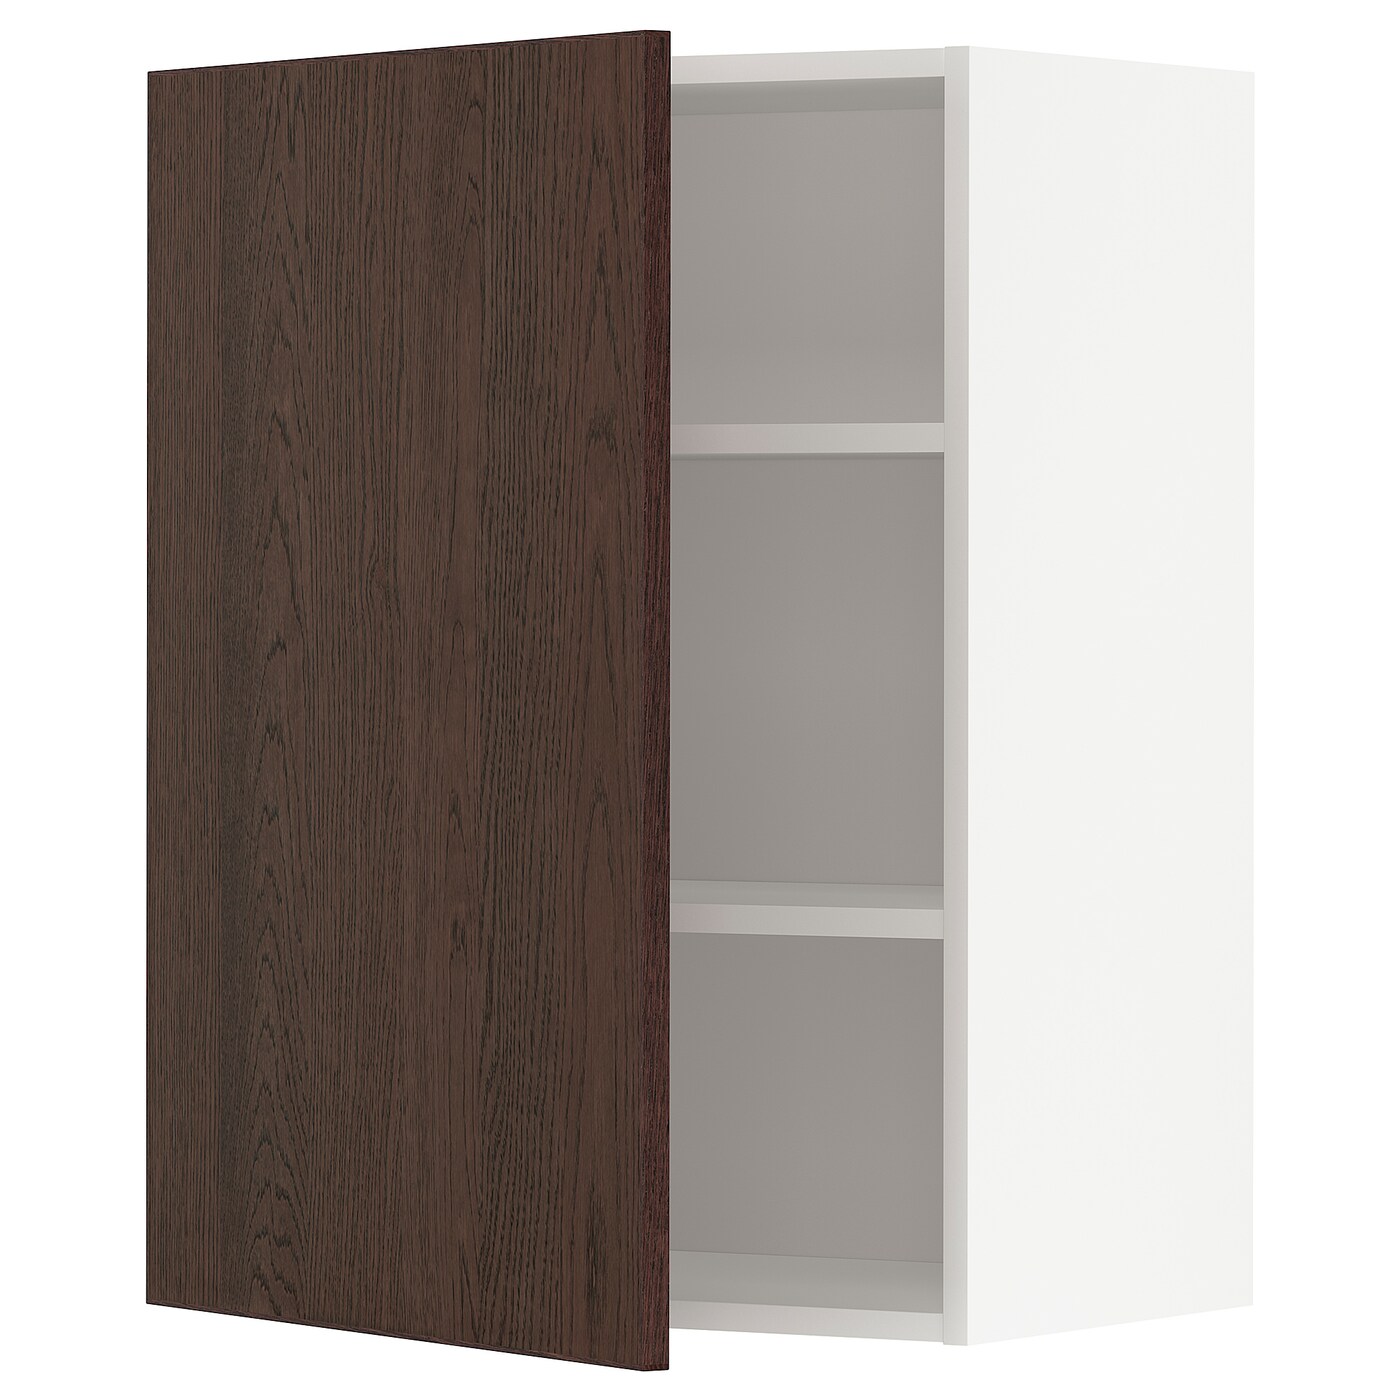 Навесной шкаф с полкой - METOD IKEA/ МЕТОД ИКЕА, 80х60 см, белый/коричневый